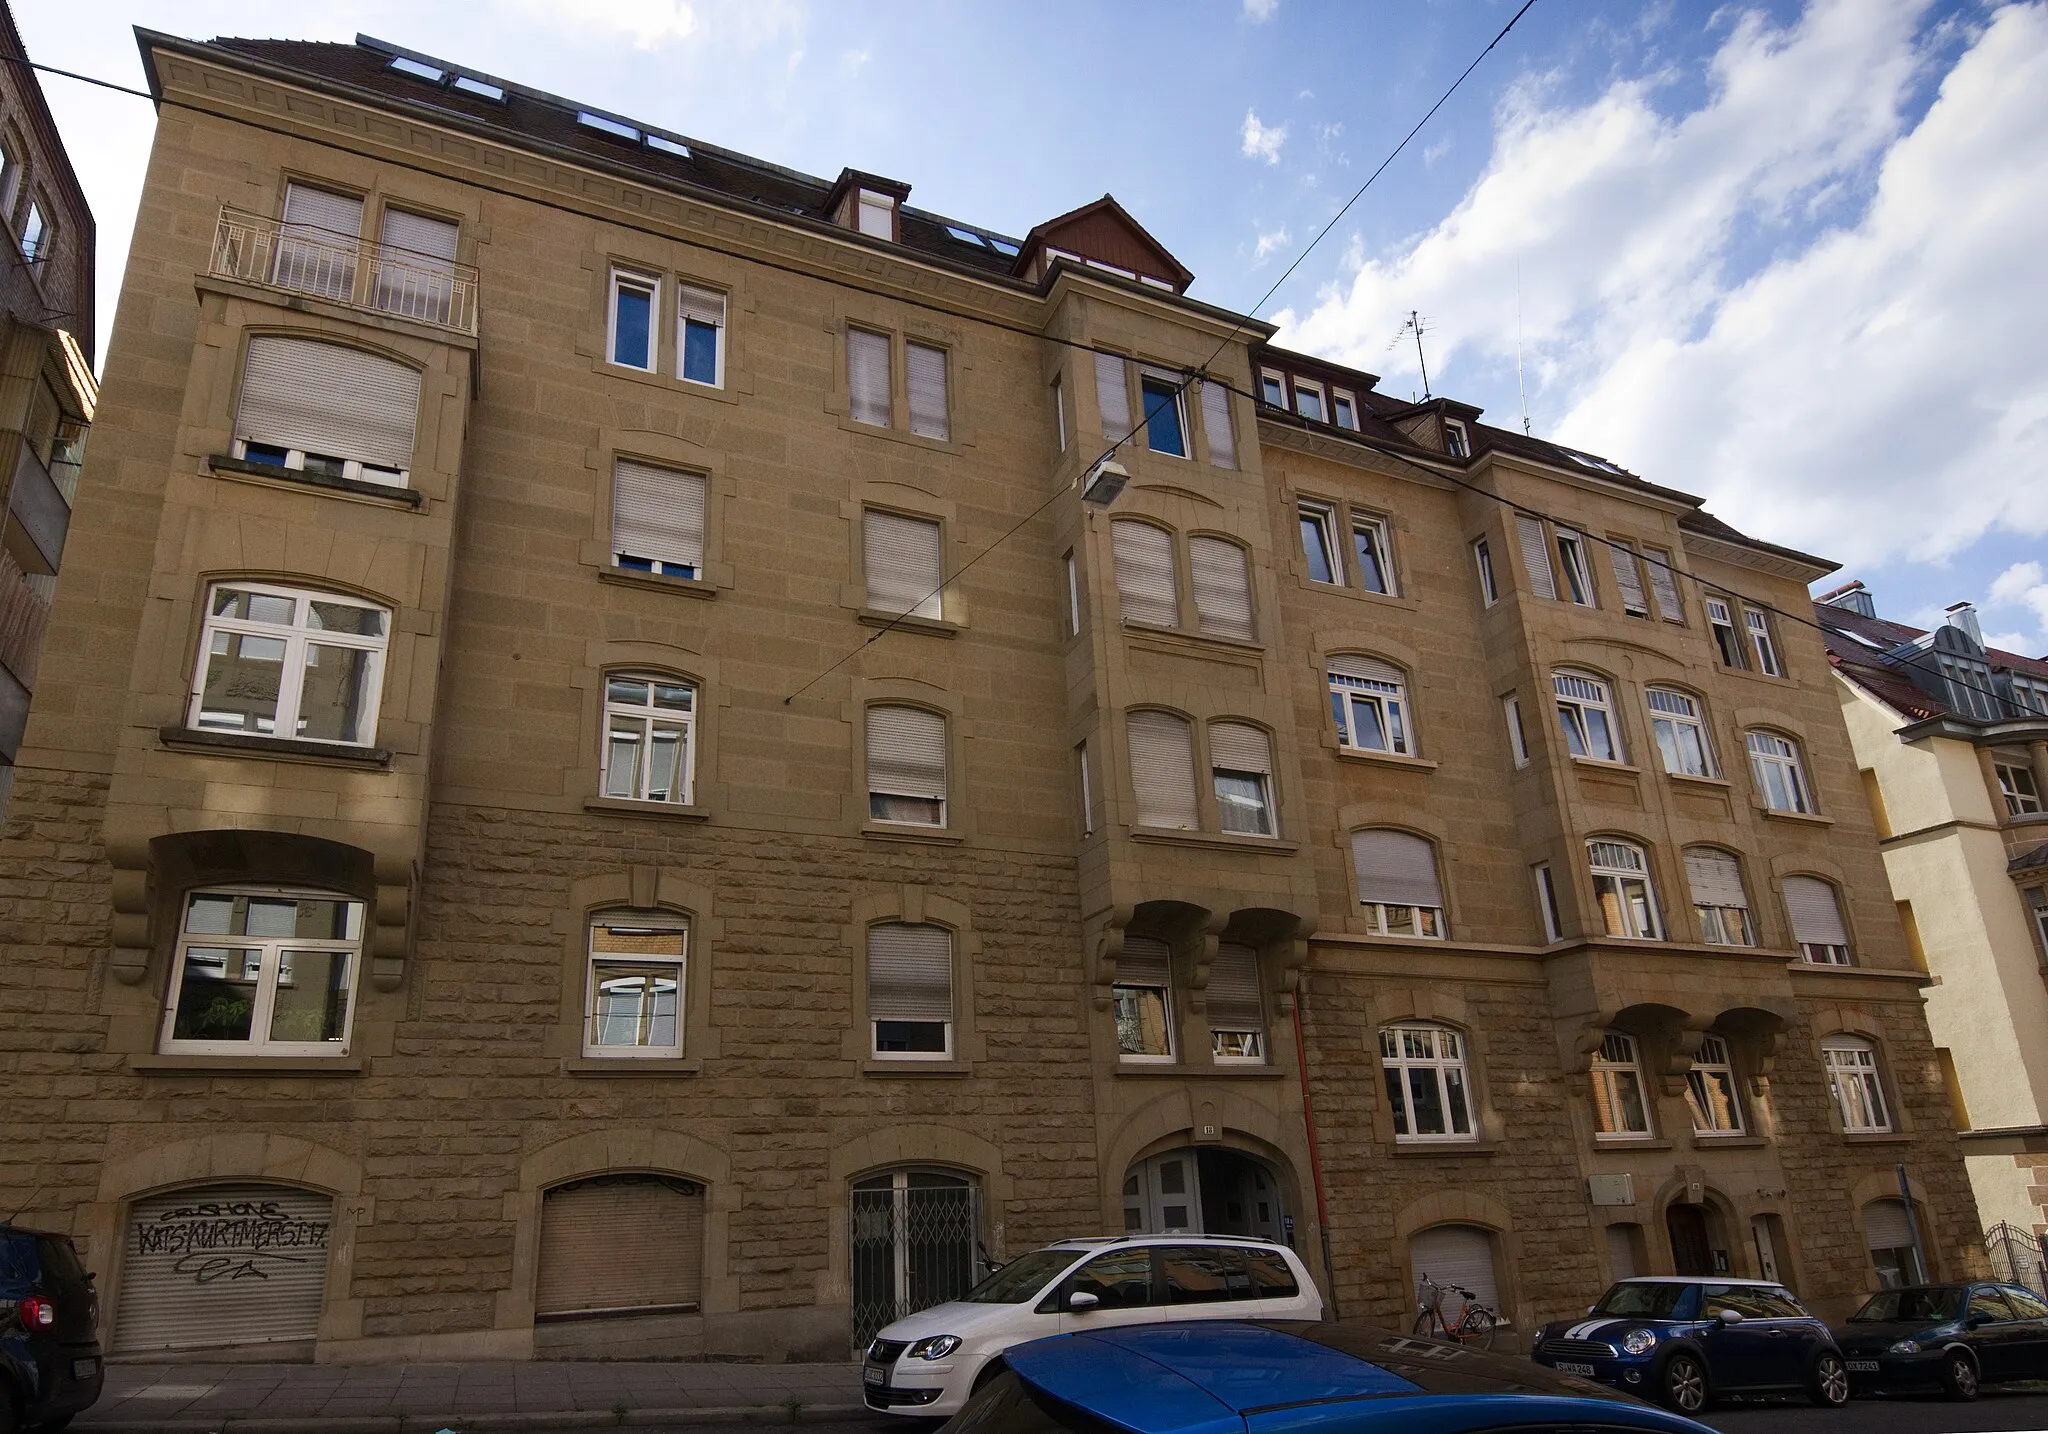 Photo showing: Doppelmietshaus mit Ladenlokalen Strohberg 16 und 18 in Stuttgart. Erbaut 1907 von Schmid und Burkhardt im Stil der Neorenaissance bzw. des Jugendstils. Geschützt nach § 2 DSchG